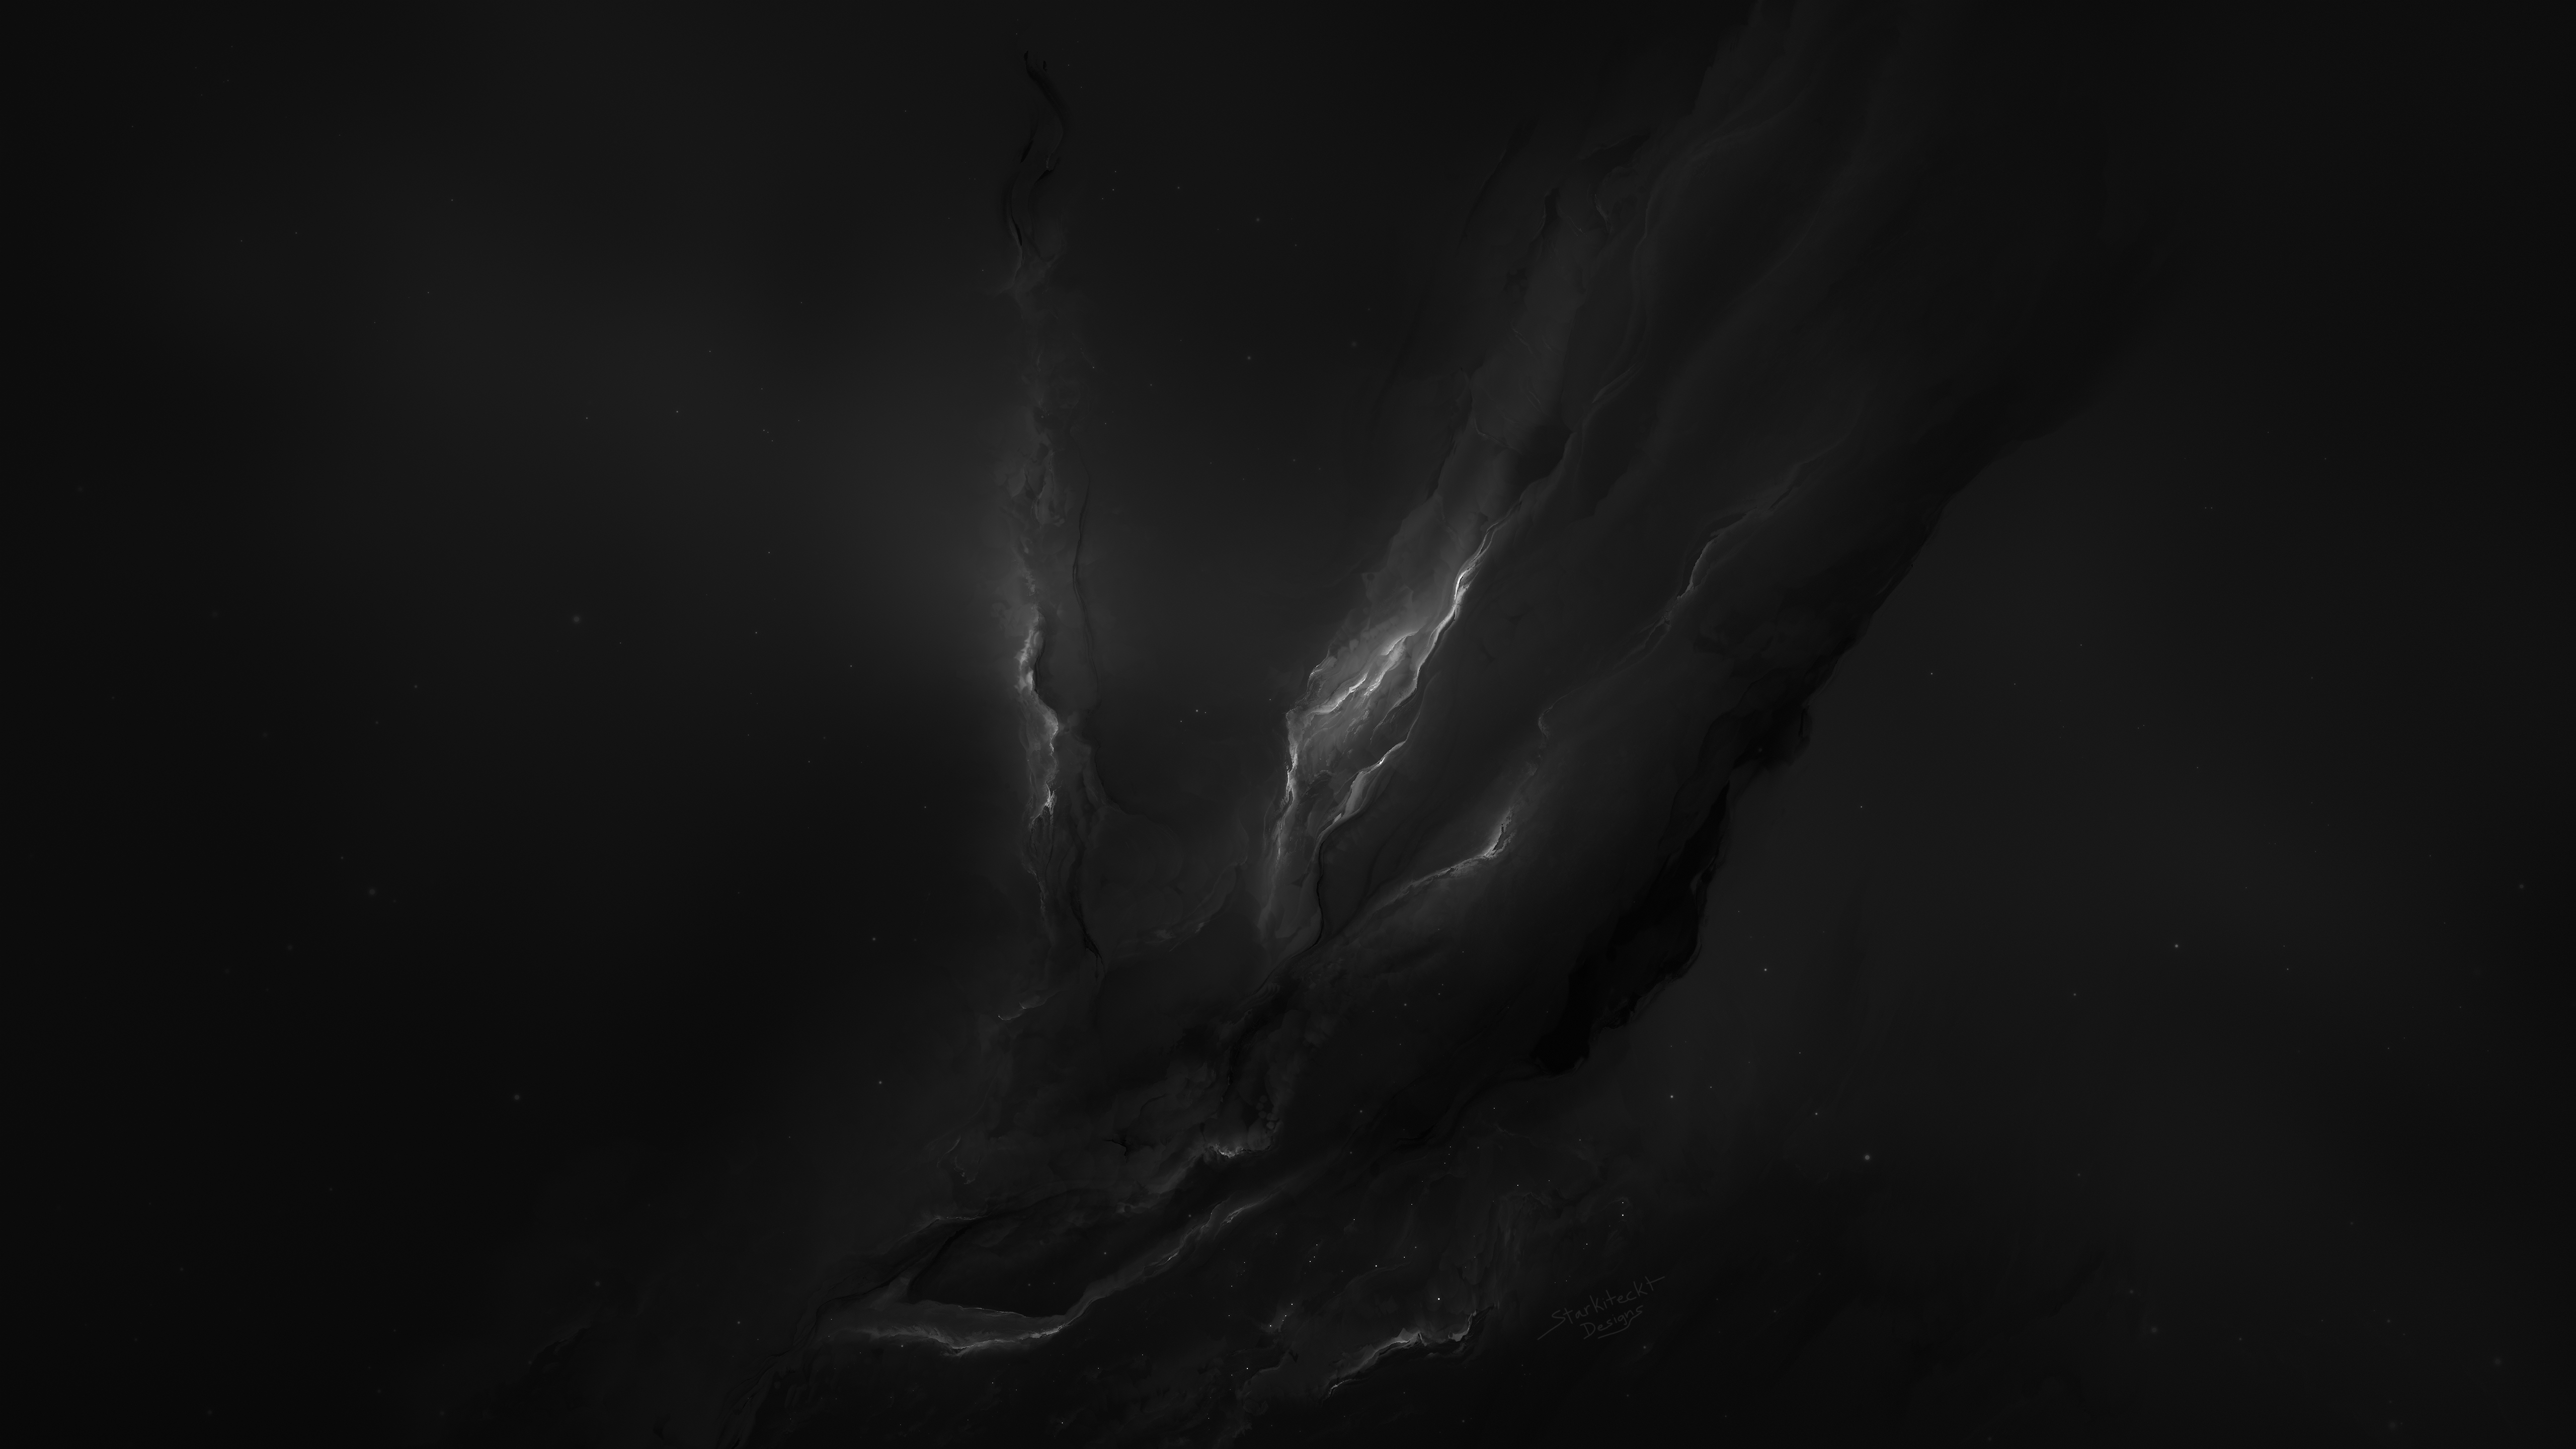 General 5120x2880 nebula black background dark background space Starkiteckt digital art stars